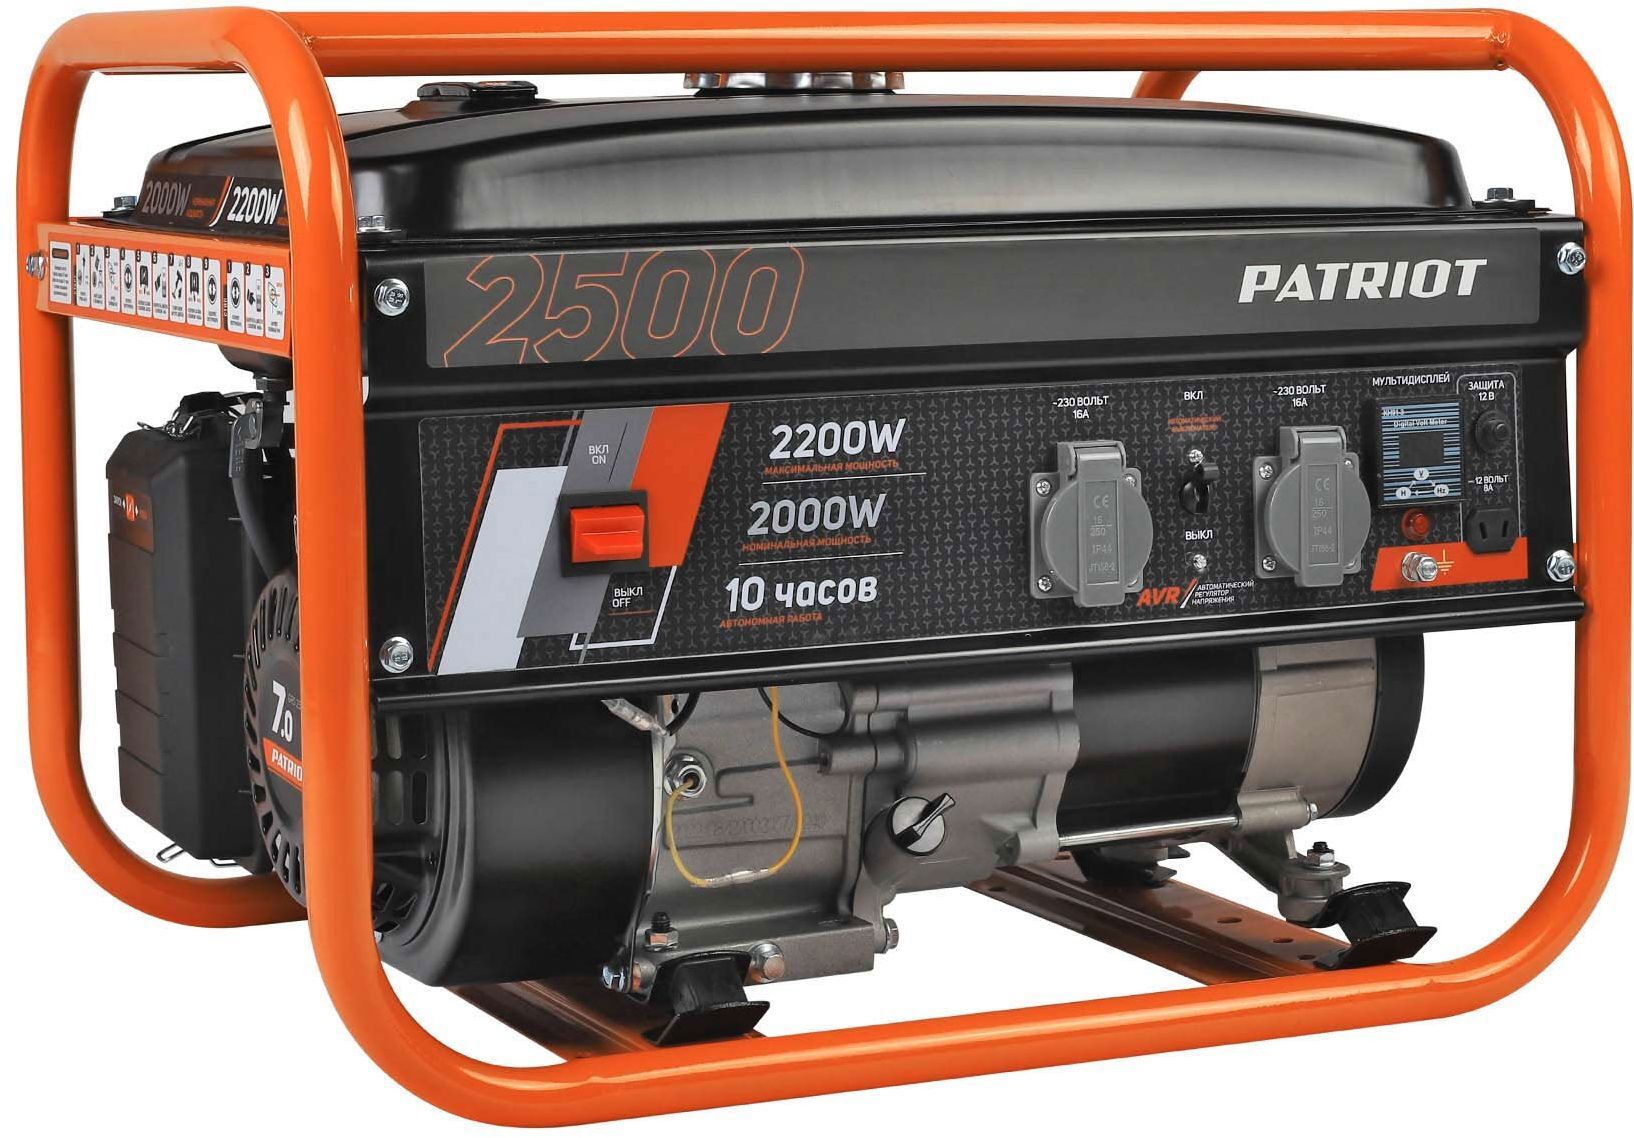  бензиновый Patriot GRS 2500, 2.2 кВт по цене 21400 ₽/шт .